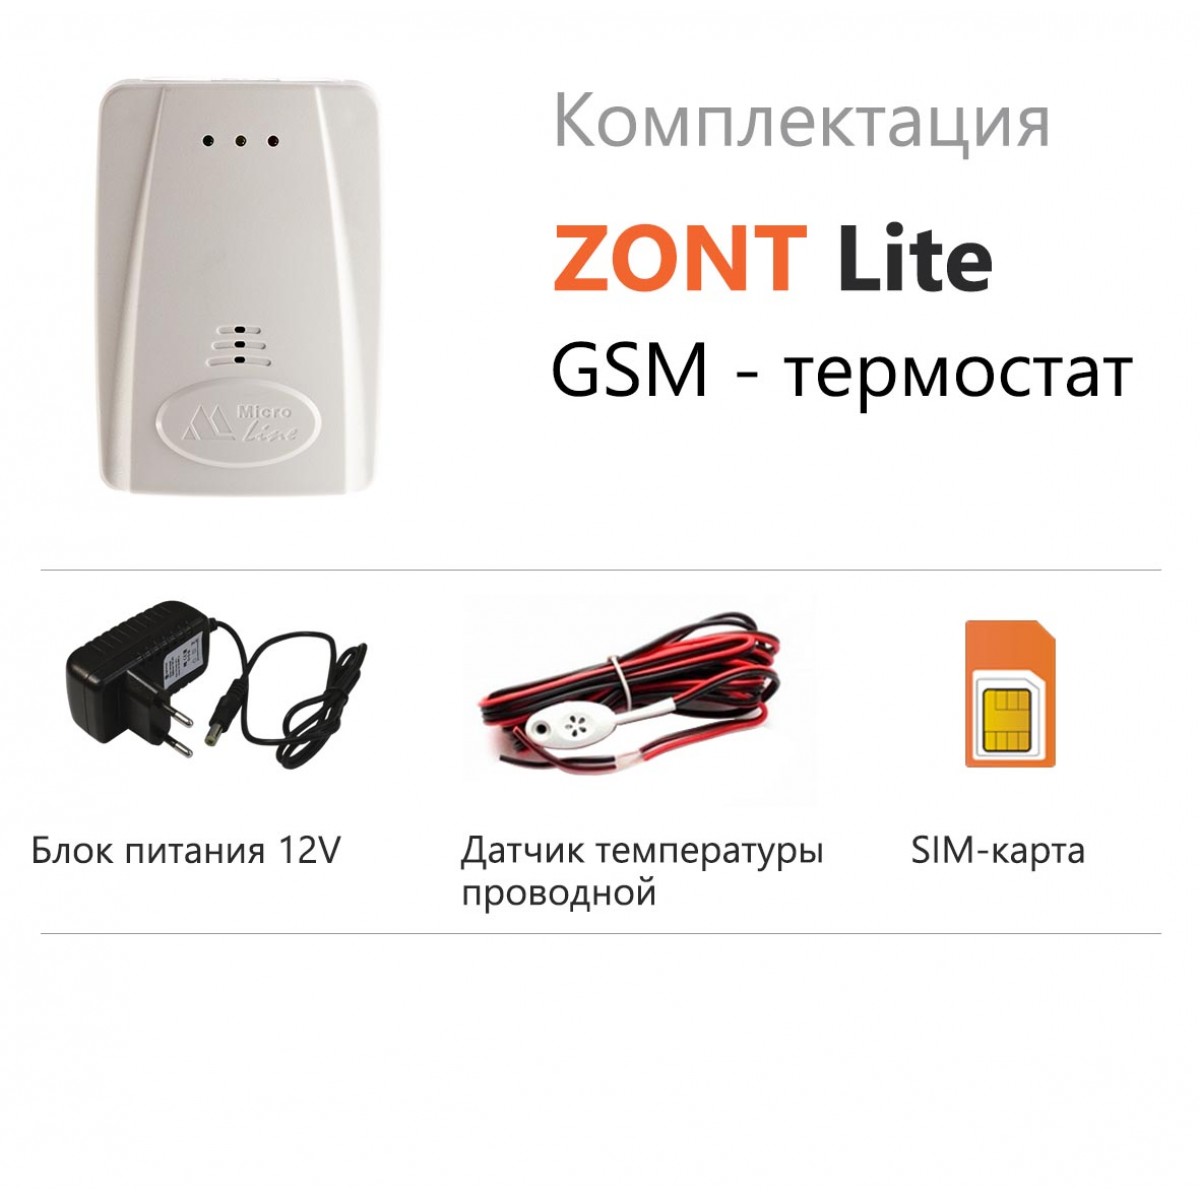 Zont h купить. GSM термостат Zont Lite 737. Термостаты GSM Zont Lite. Wi-Fi термостат Zont h-2. Термостат Zont h-1v.02.